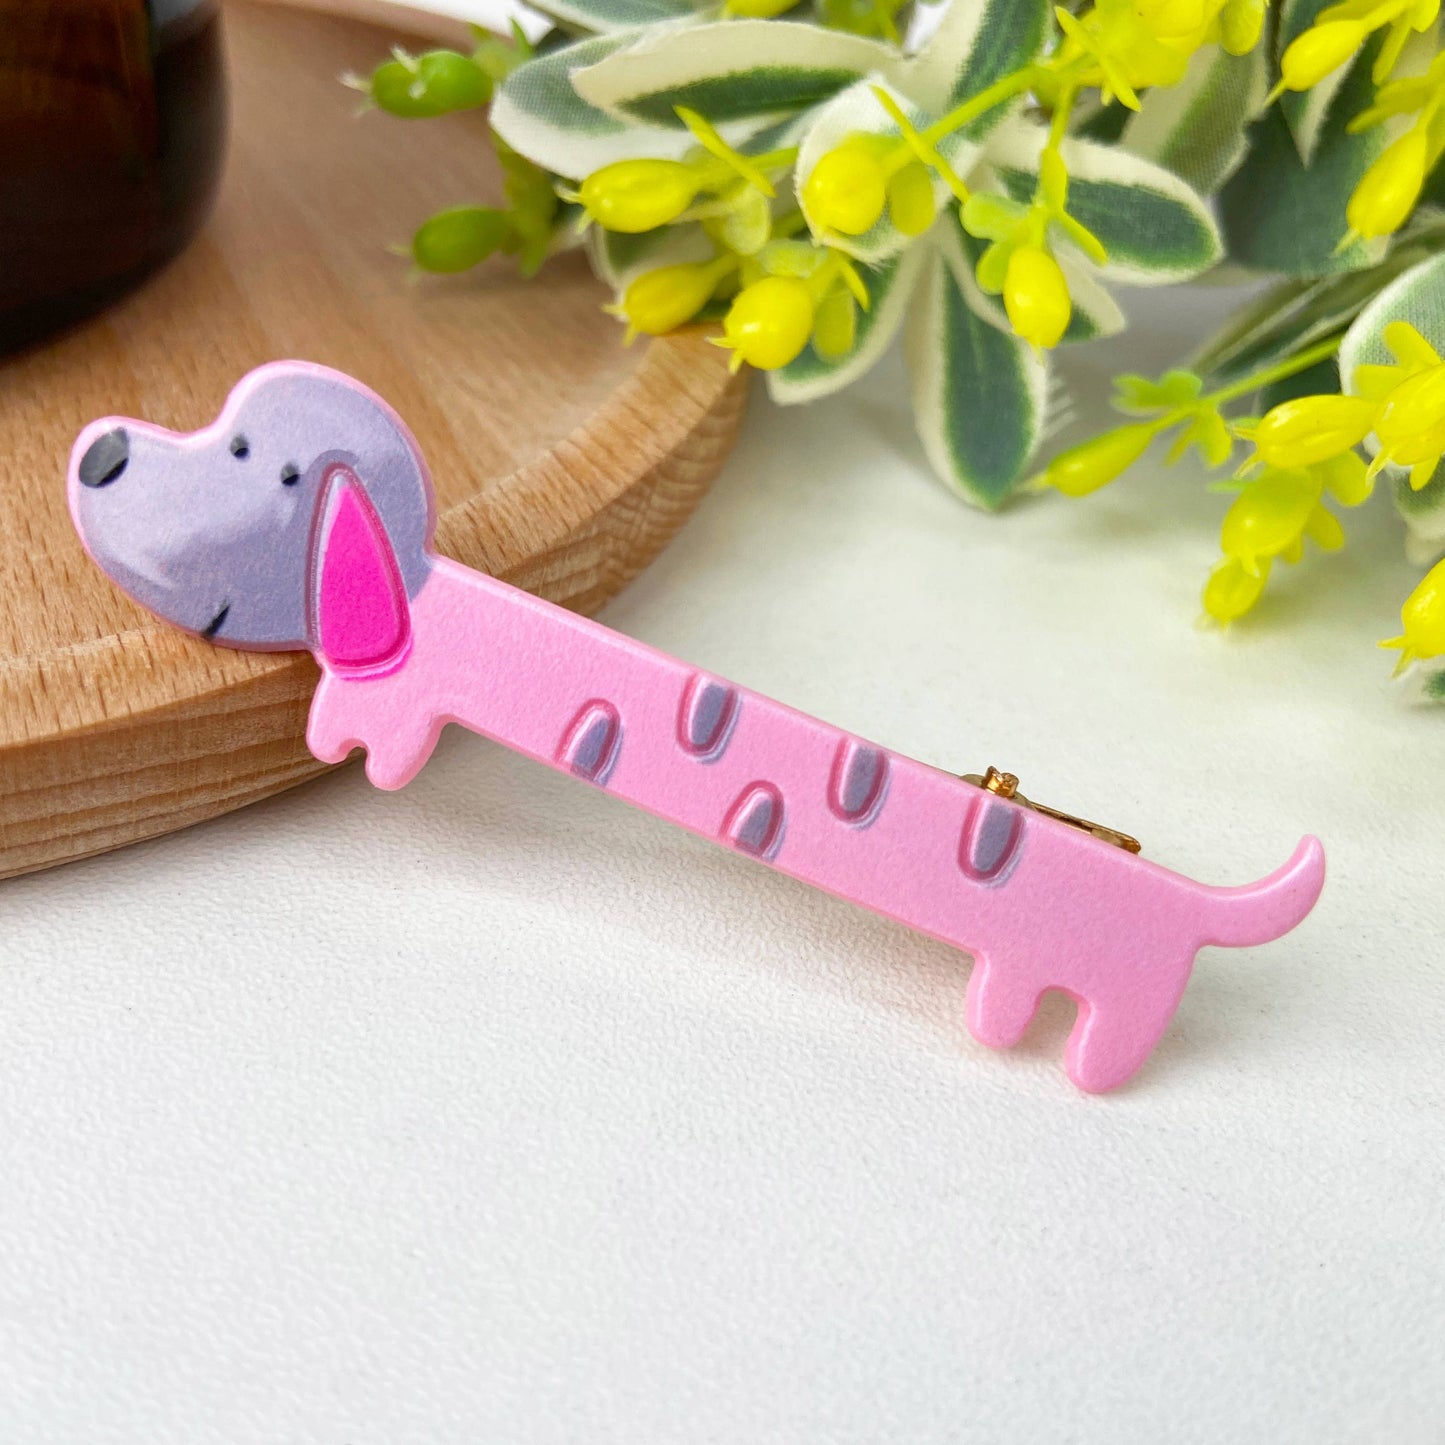 SoapElenGlen - Cute cartoon colorful dachshund hair clip